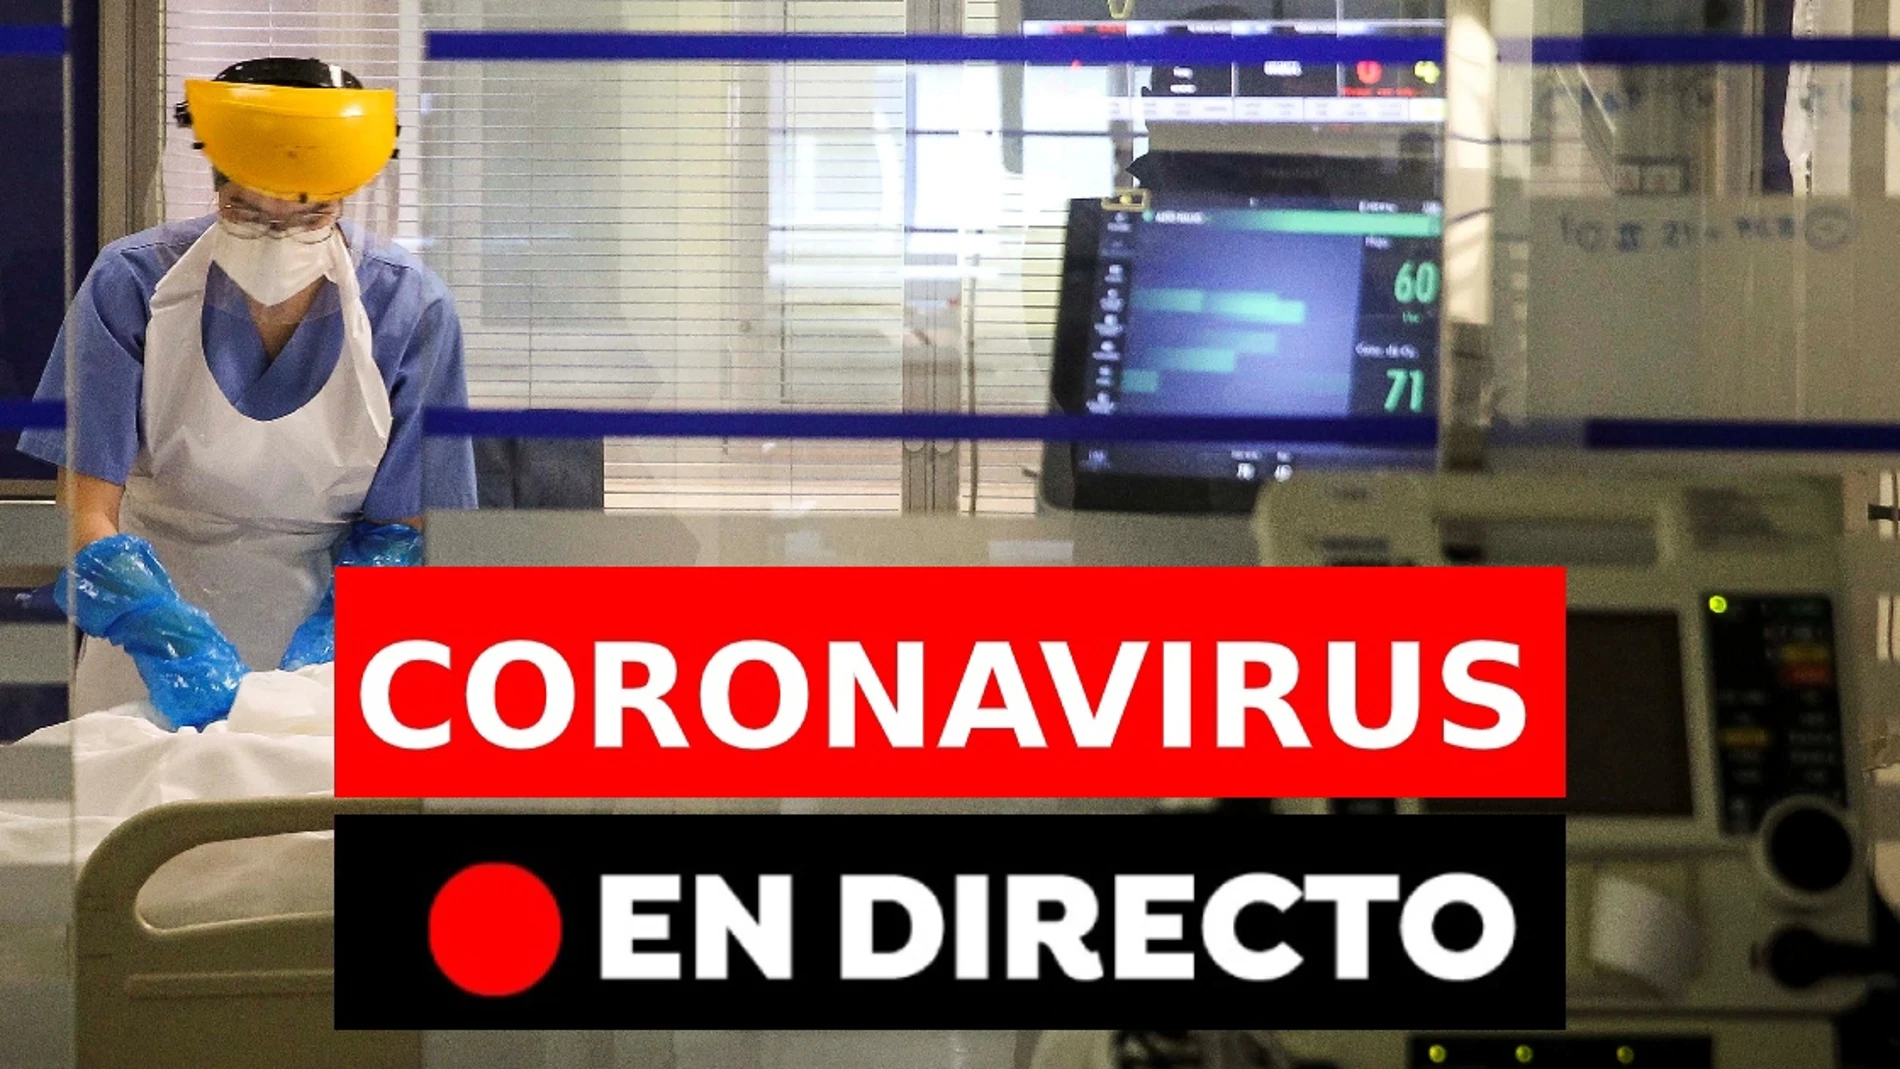 Coronavirus España: Última hora de contagios de la variante india, vacunas y estado de alarma, en directo